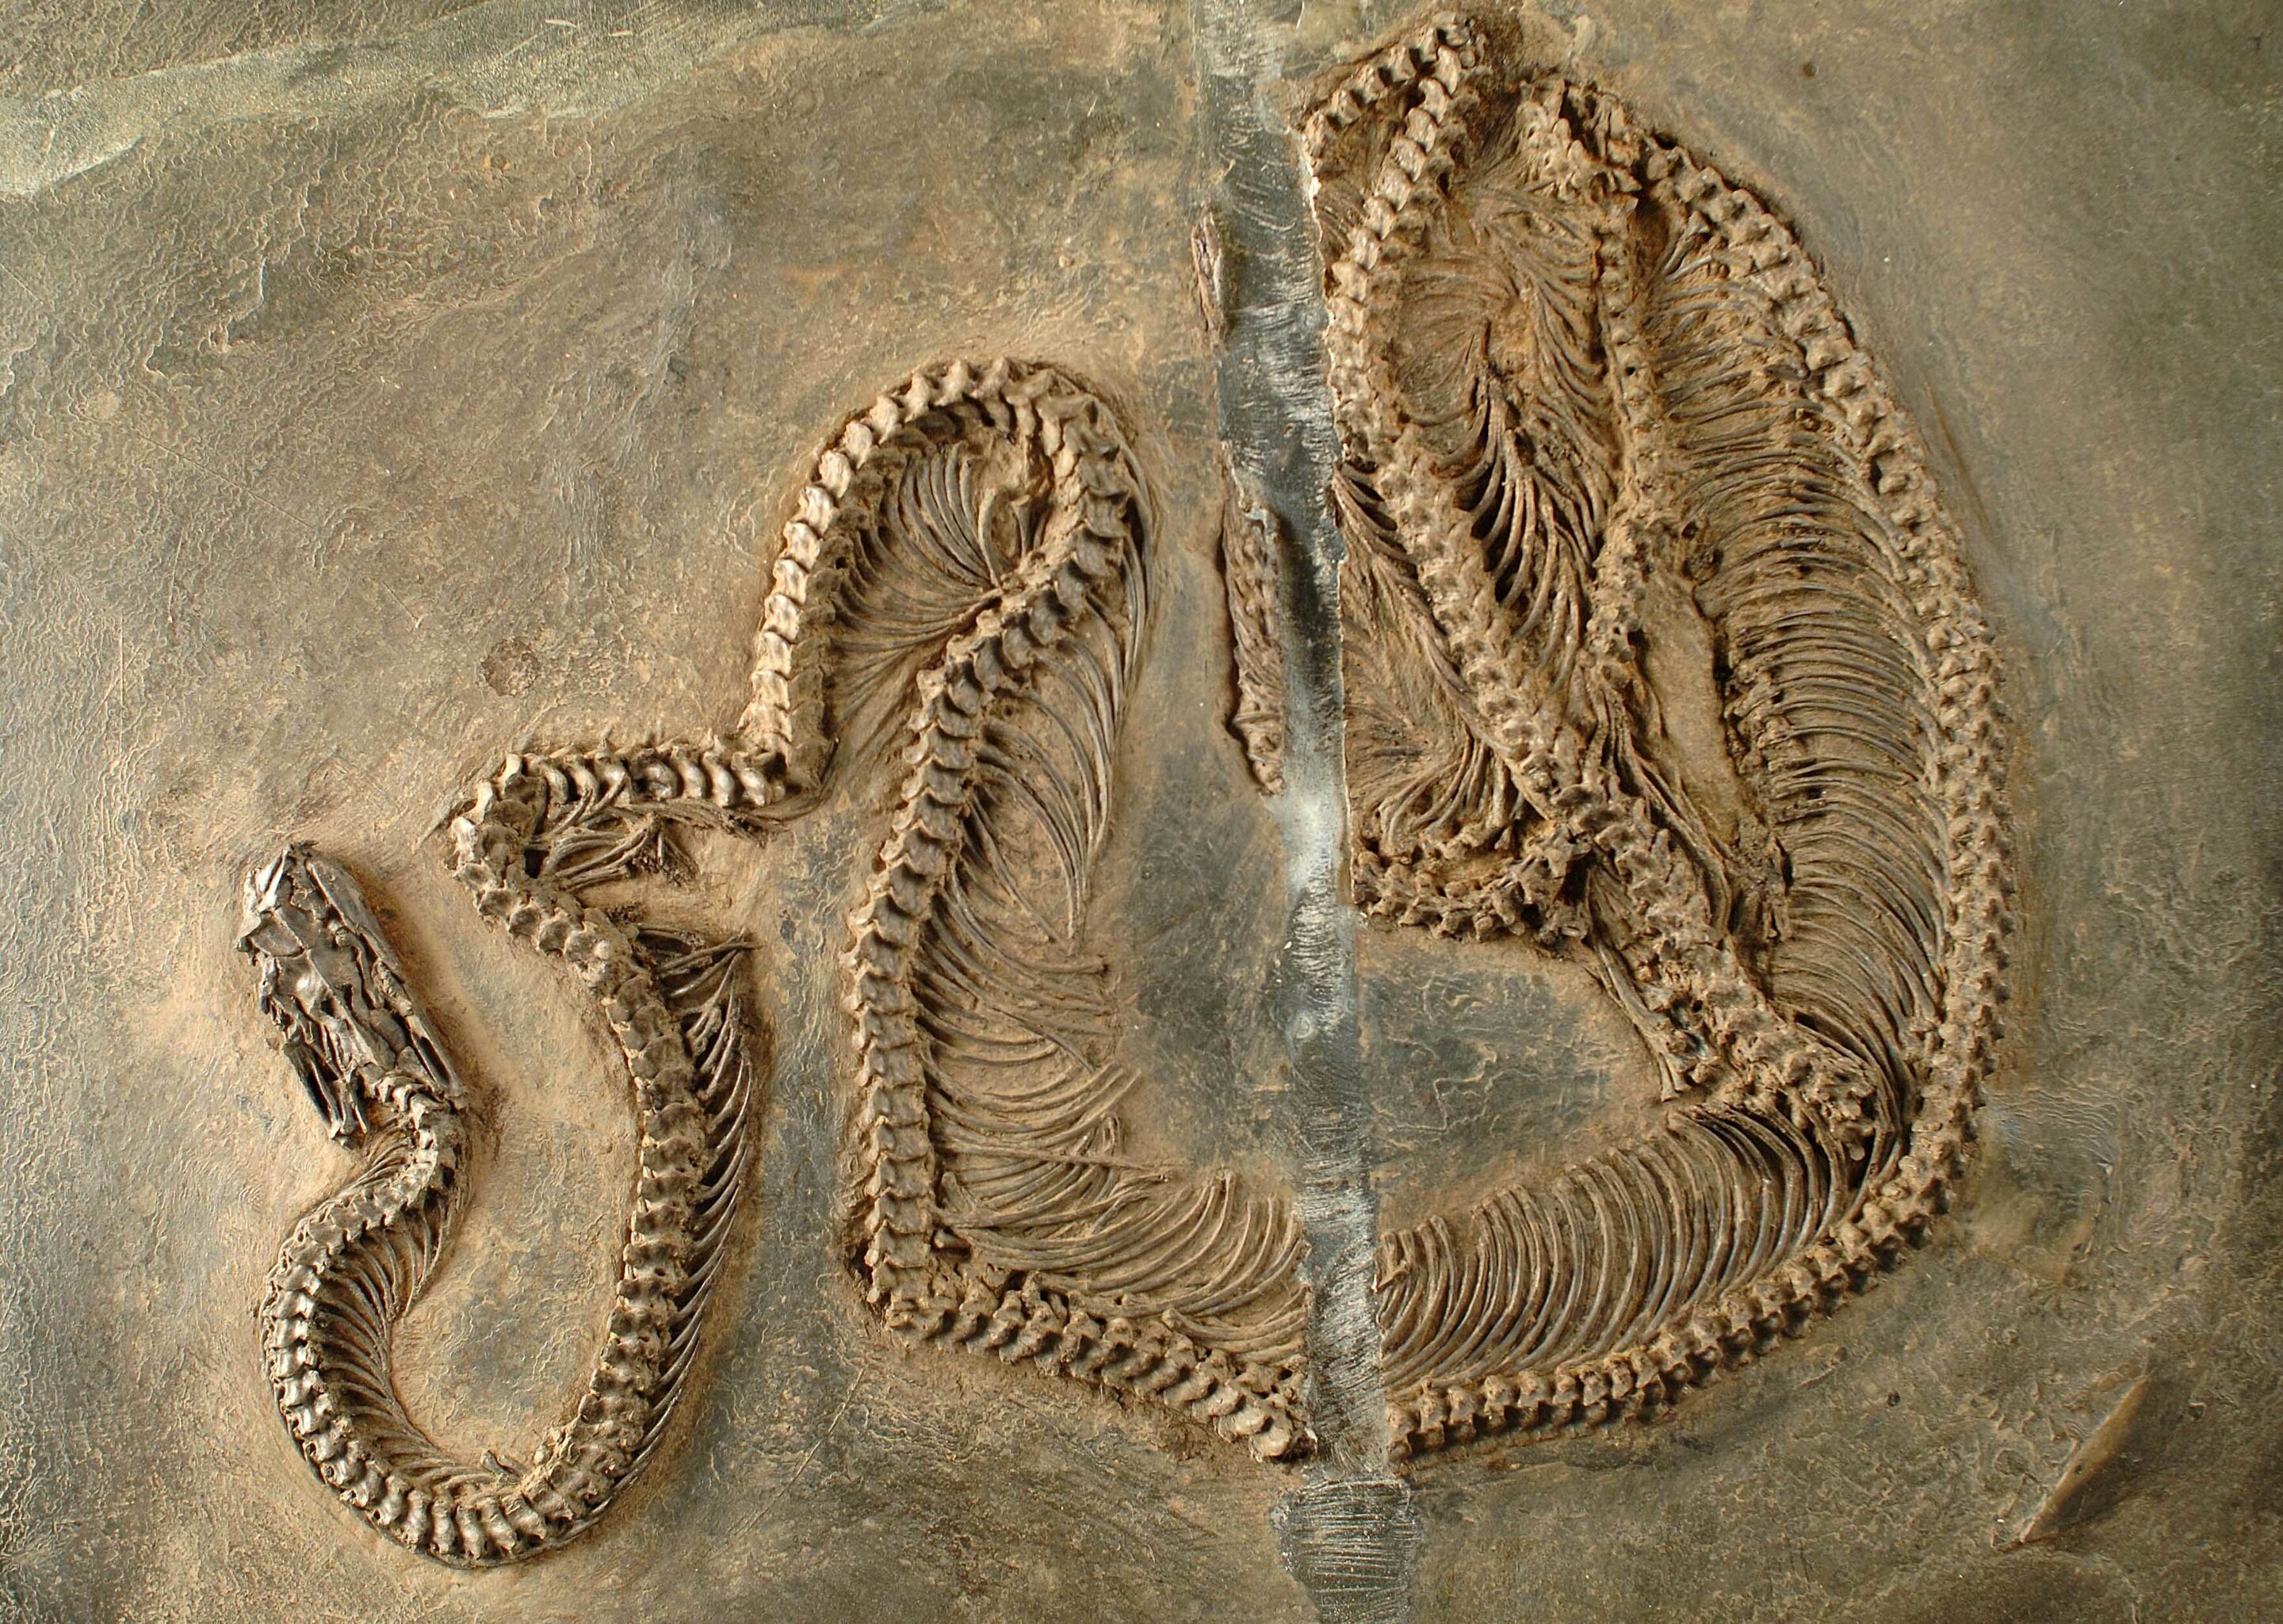 Fóssil pode ajudar a desvendar origem das serpentes - 19/07/2022 - Ciência  - Folha